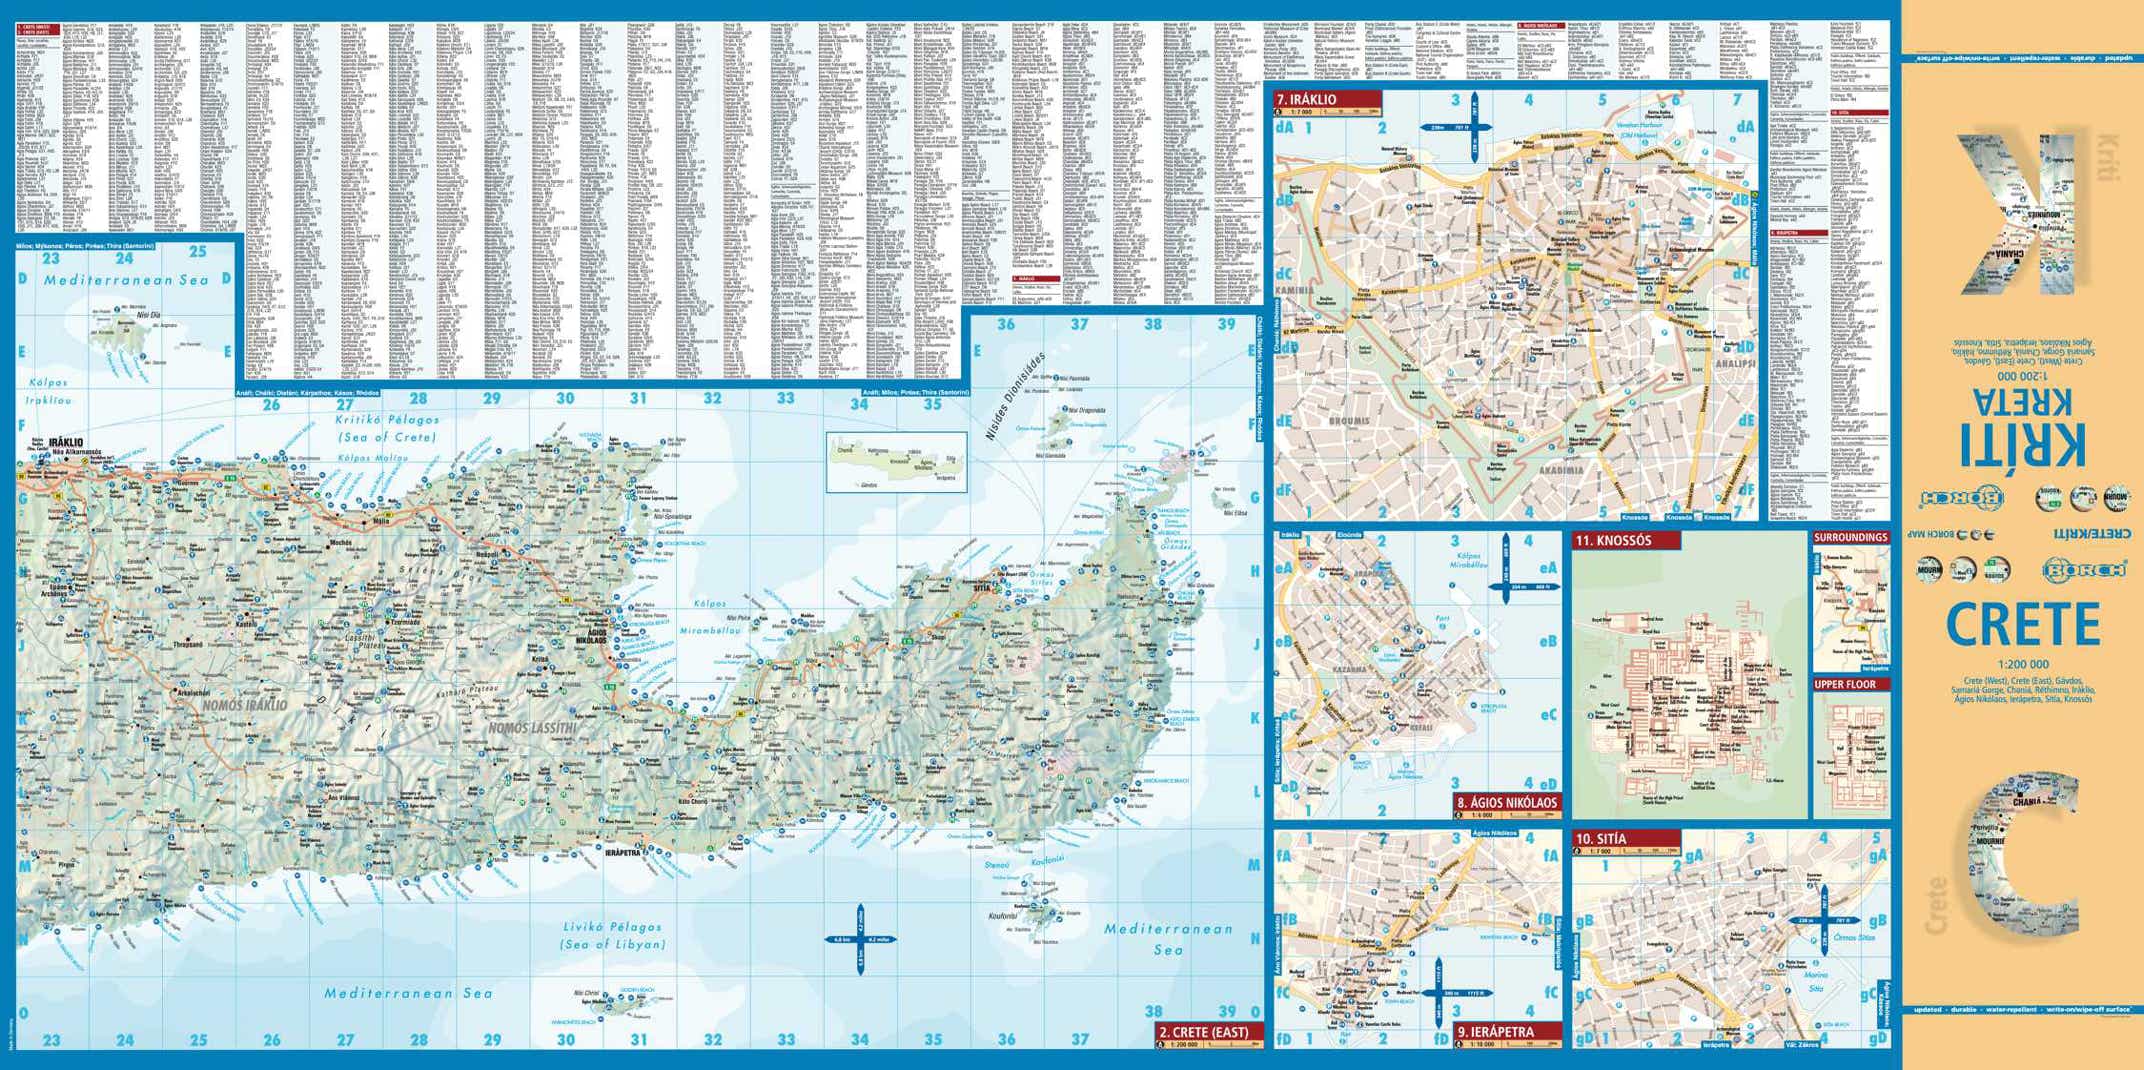 Crete Greece Borch Map - page 1 